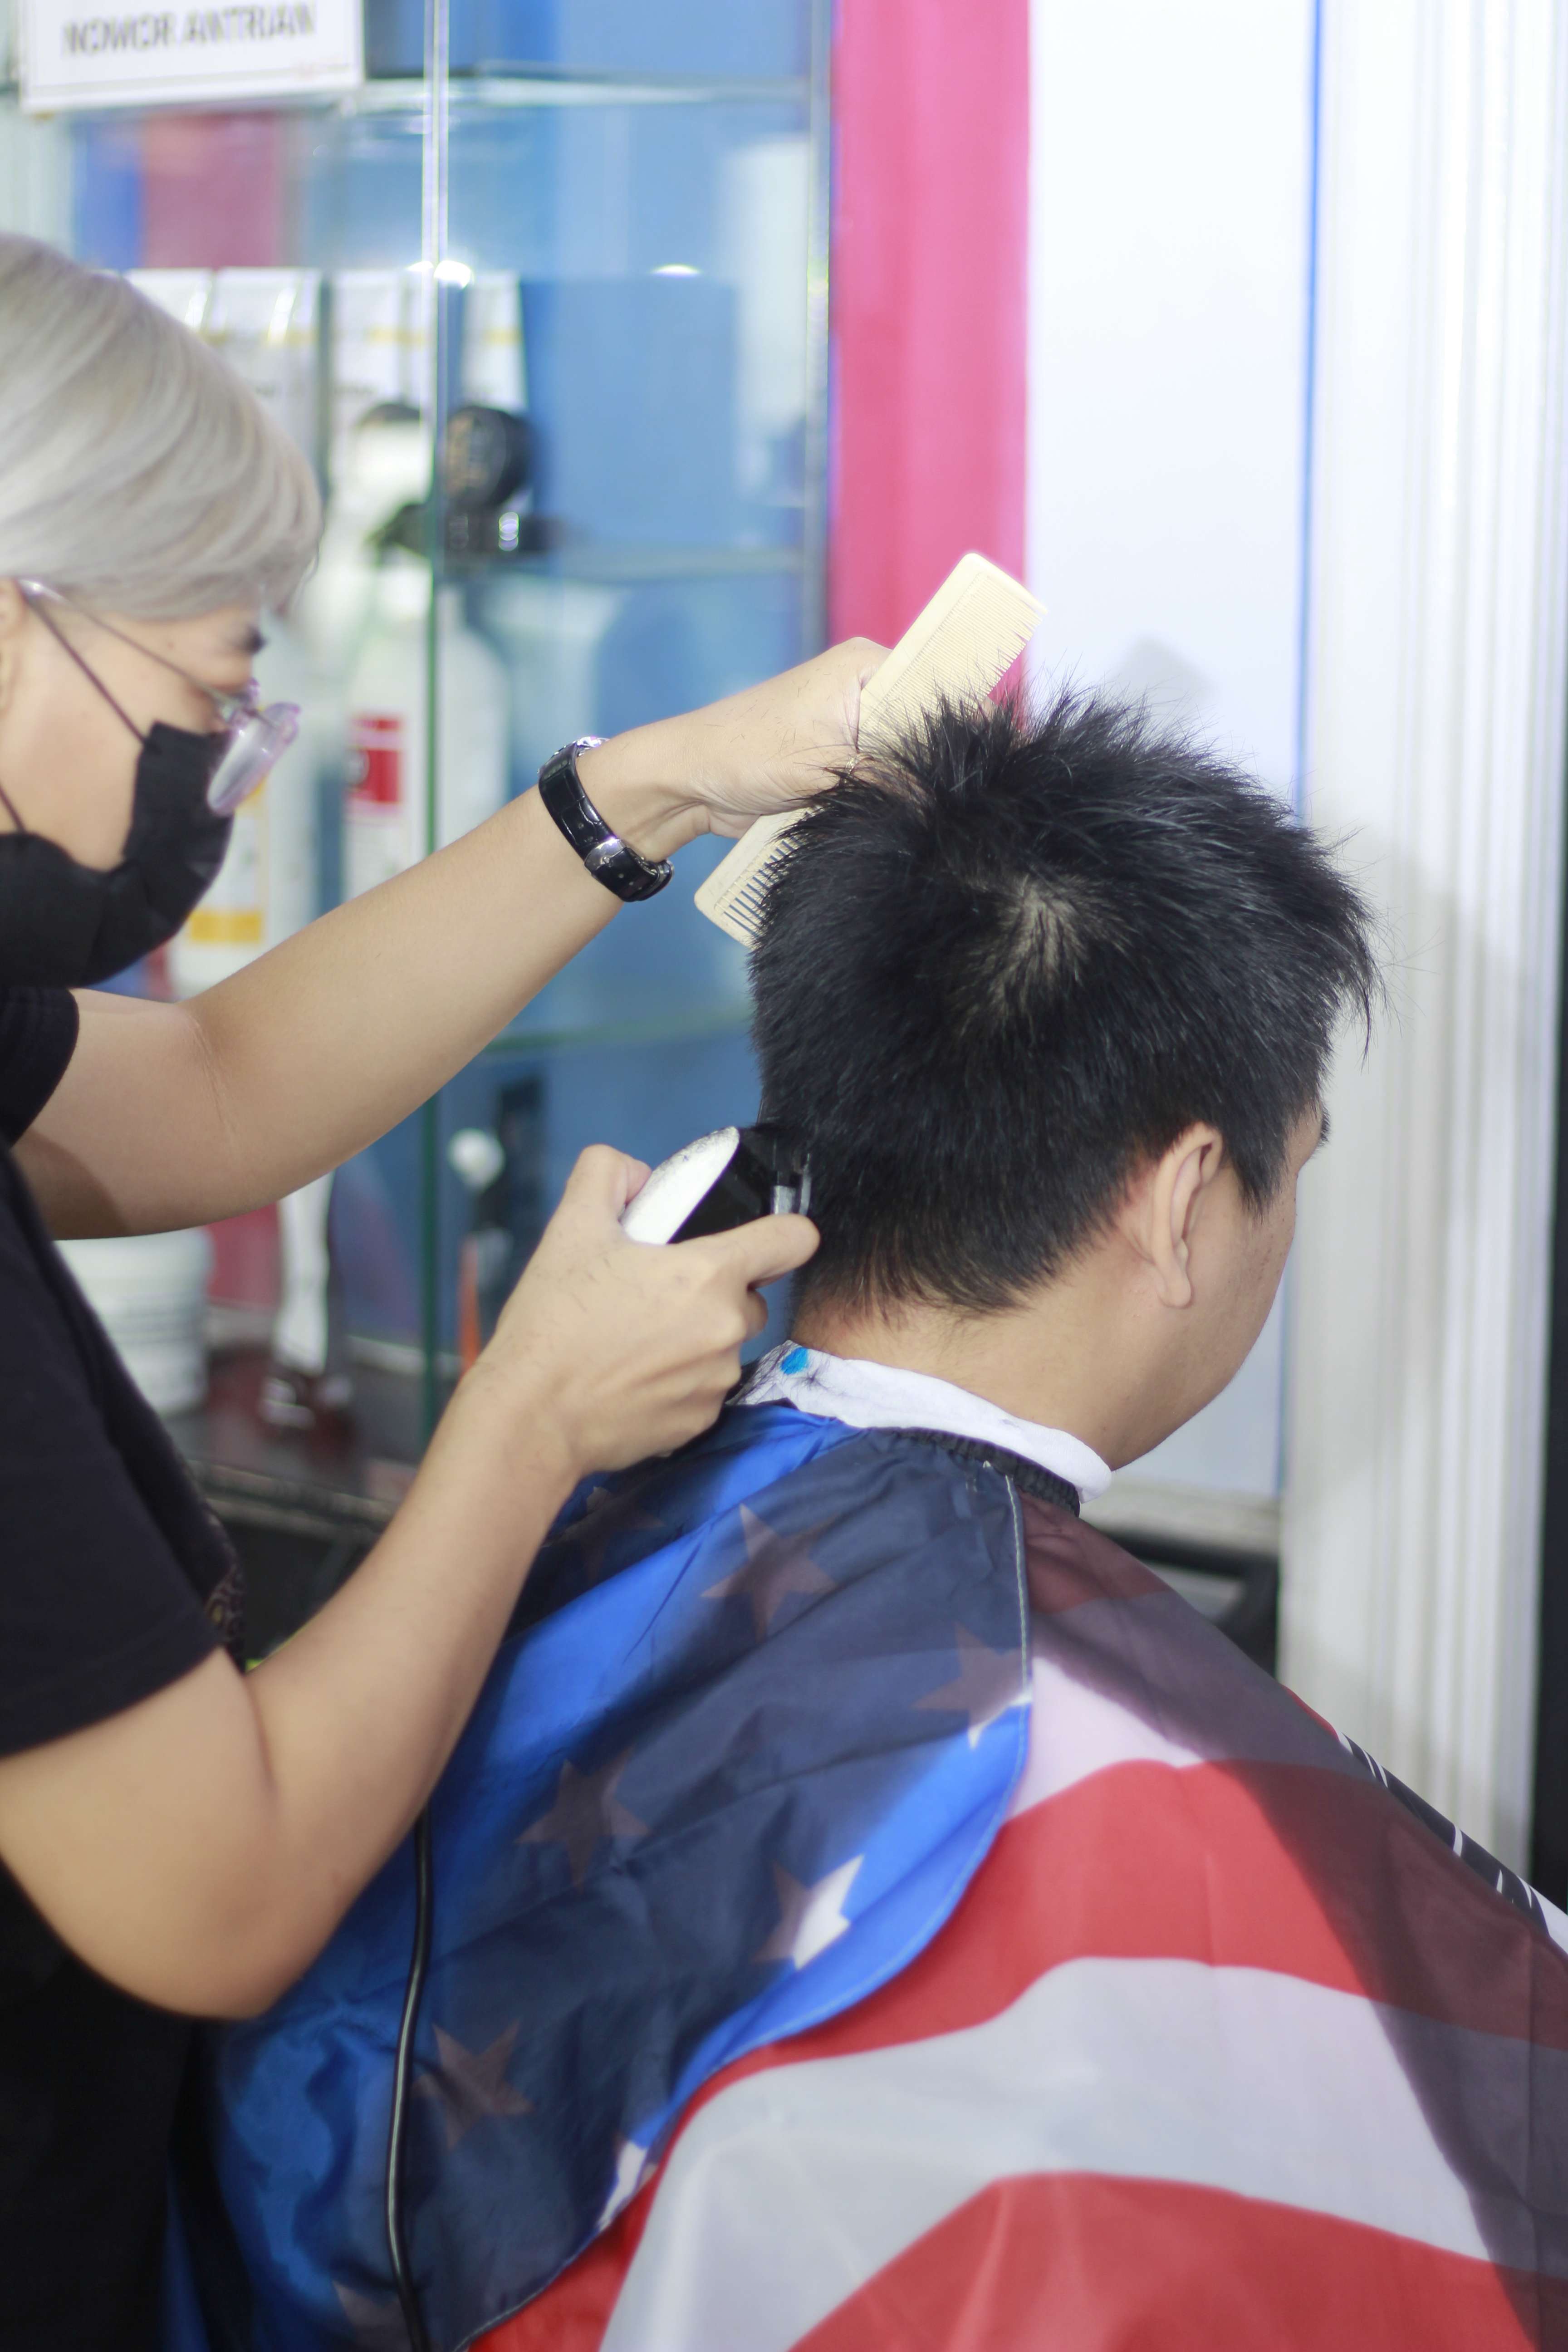 Lokasi Tempat Cukur Rambut Di Kecamatan Lowokwaru Profesional